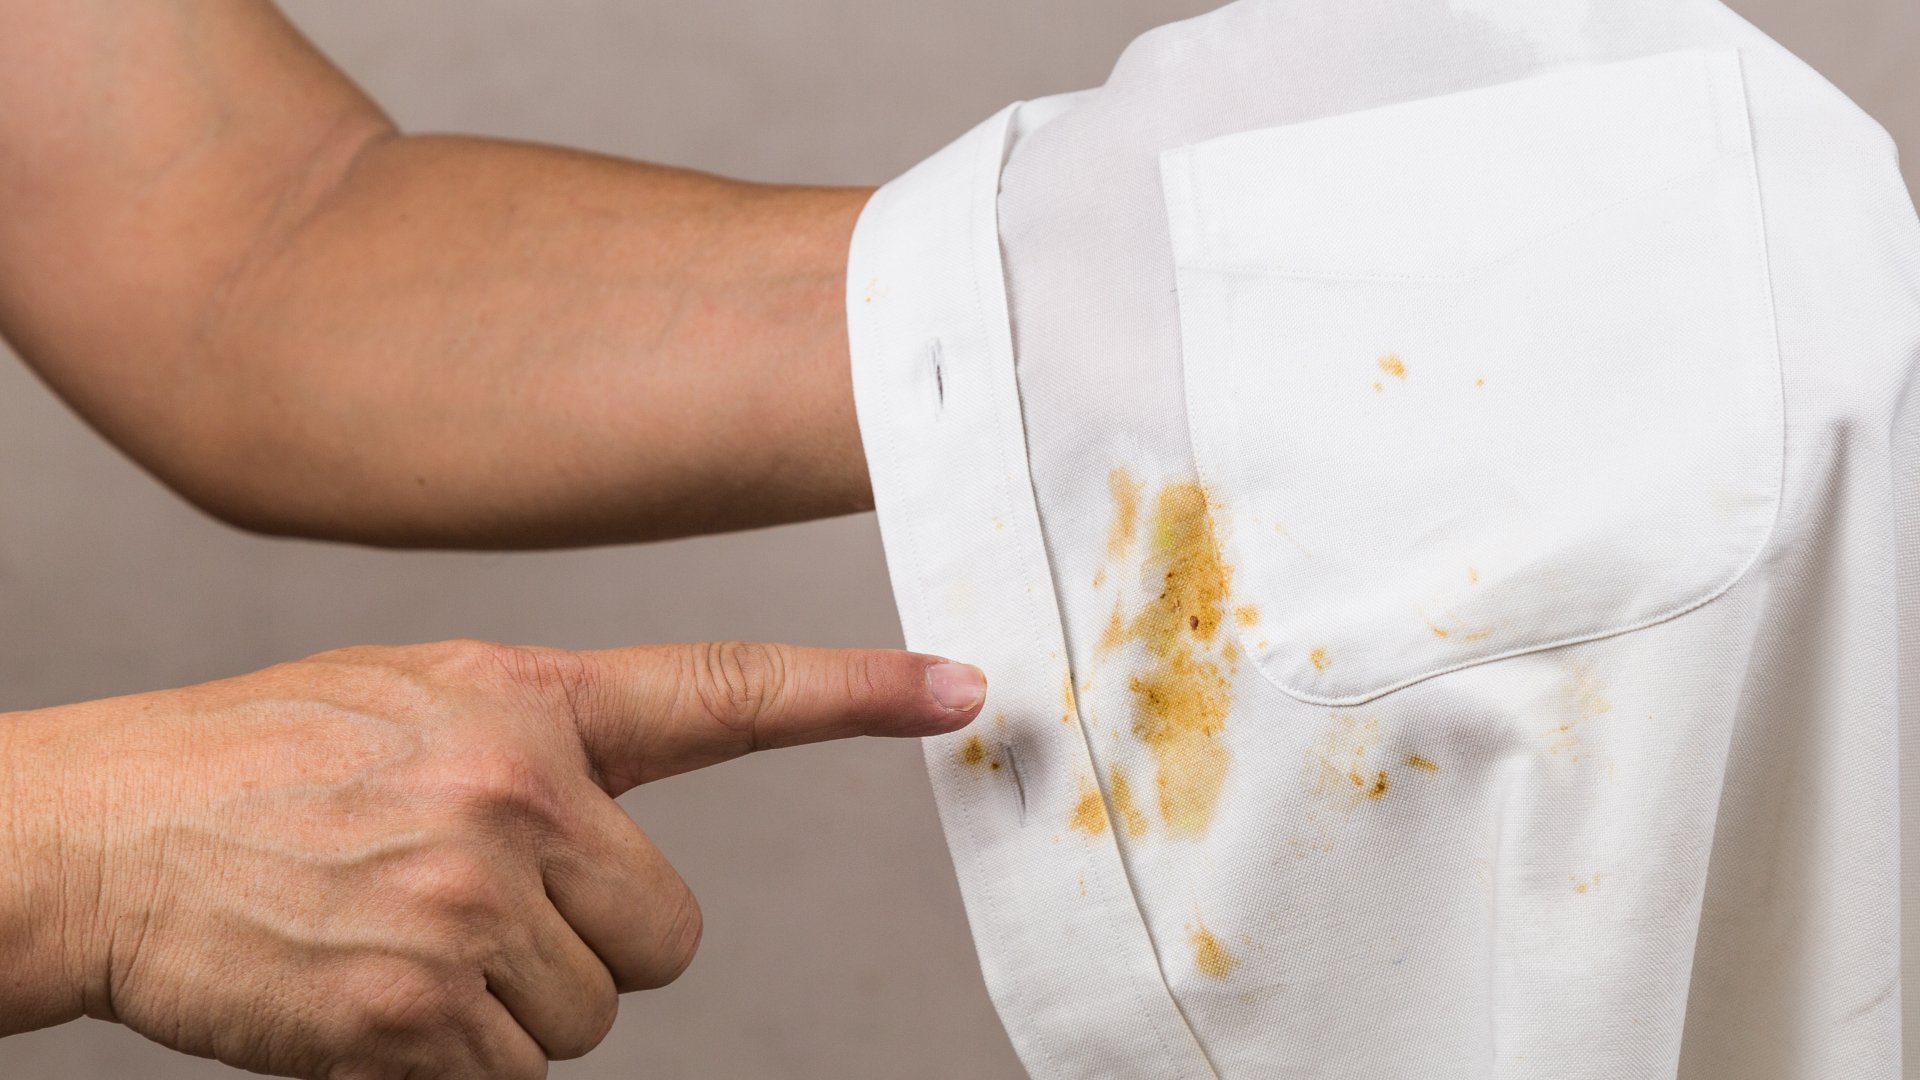 Cómo quitar las manchas de aceite o grasa de la ropa: te explicamos los mejores trucos